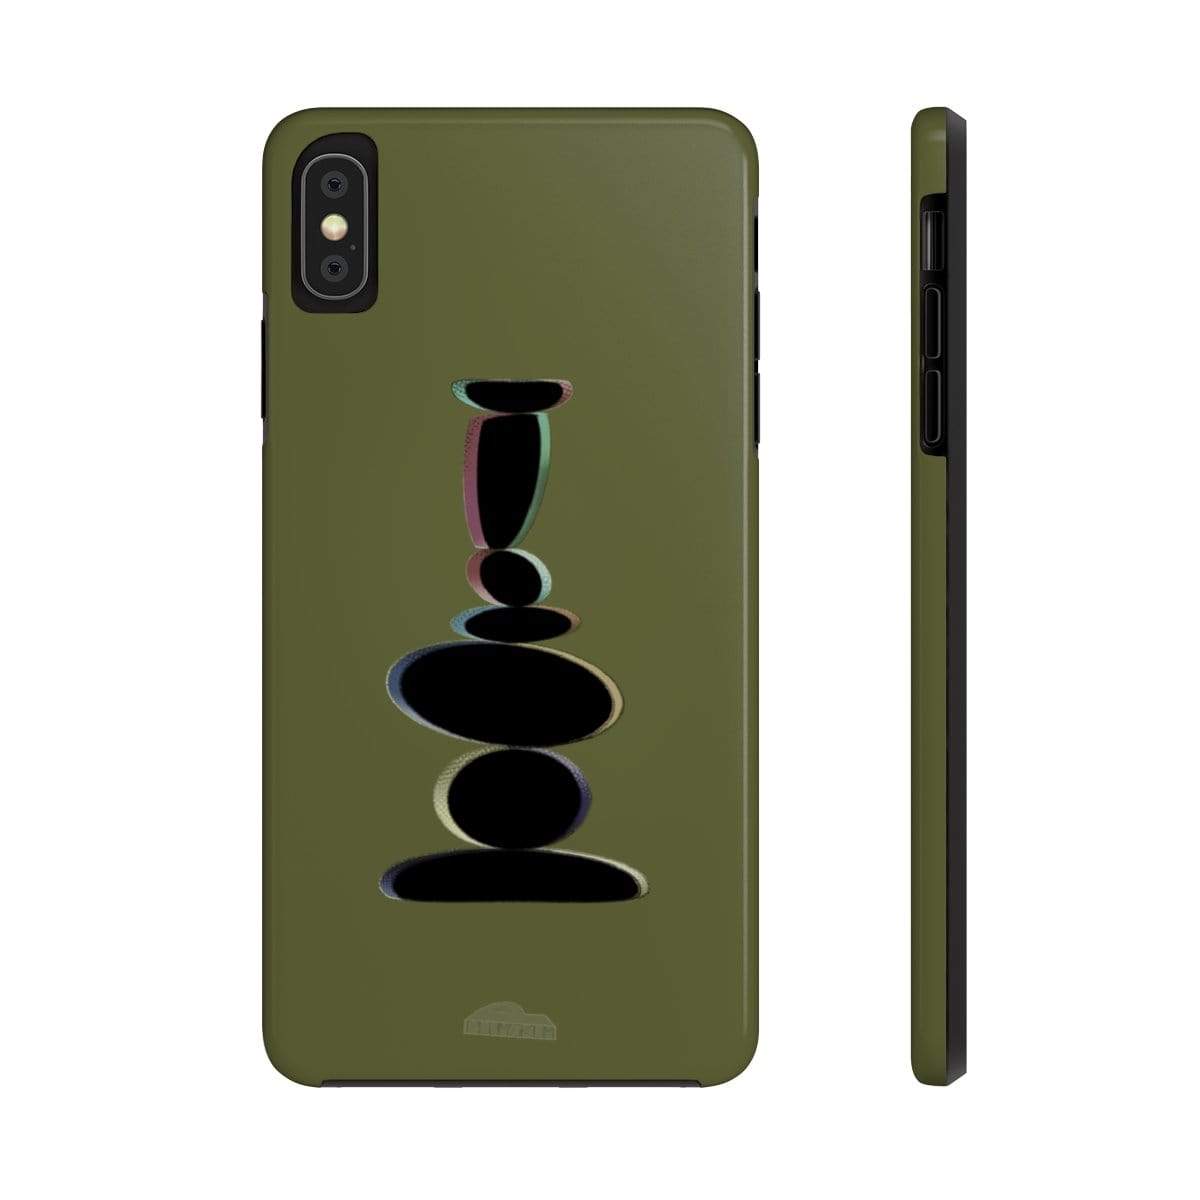 Plumskum Phone Case iPhone XS MAX Plumskum Zen Balanced Stones Artwork Phone Case